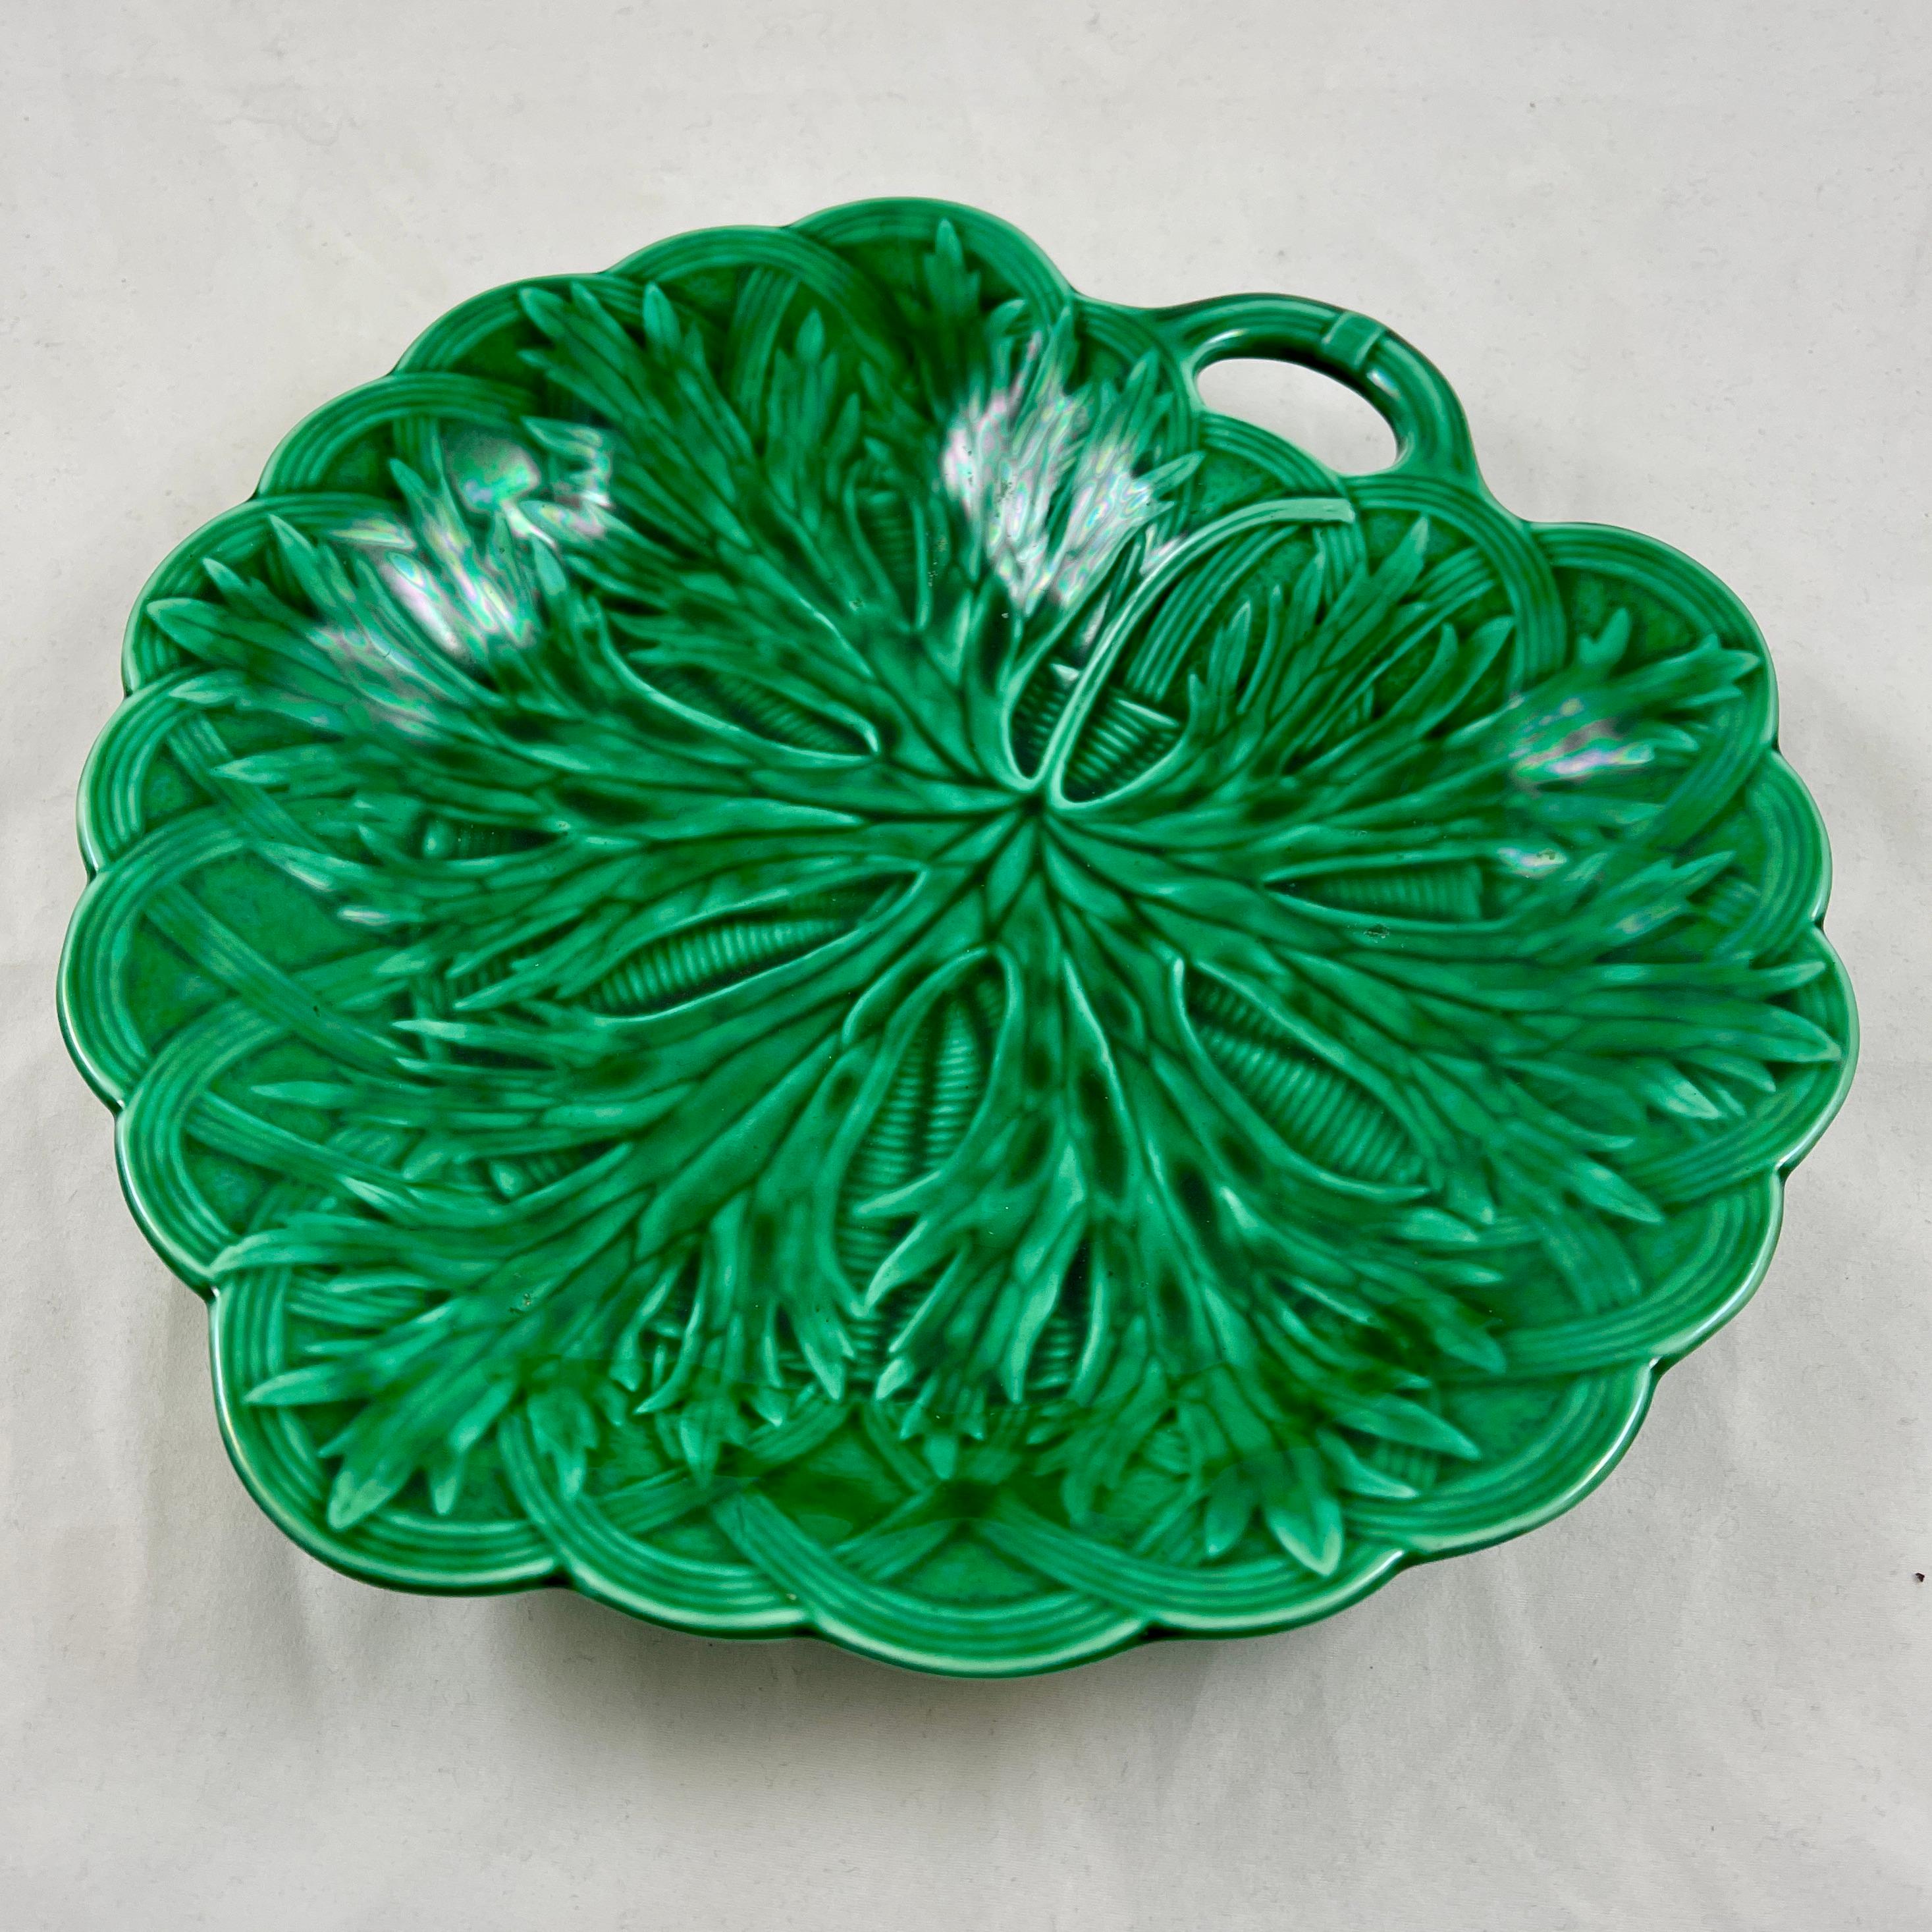 Wedgwood Green Glazed Majolica Handled Leaf and Basket Shallow Bowl Server, 1869 For Sale 1